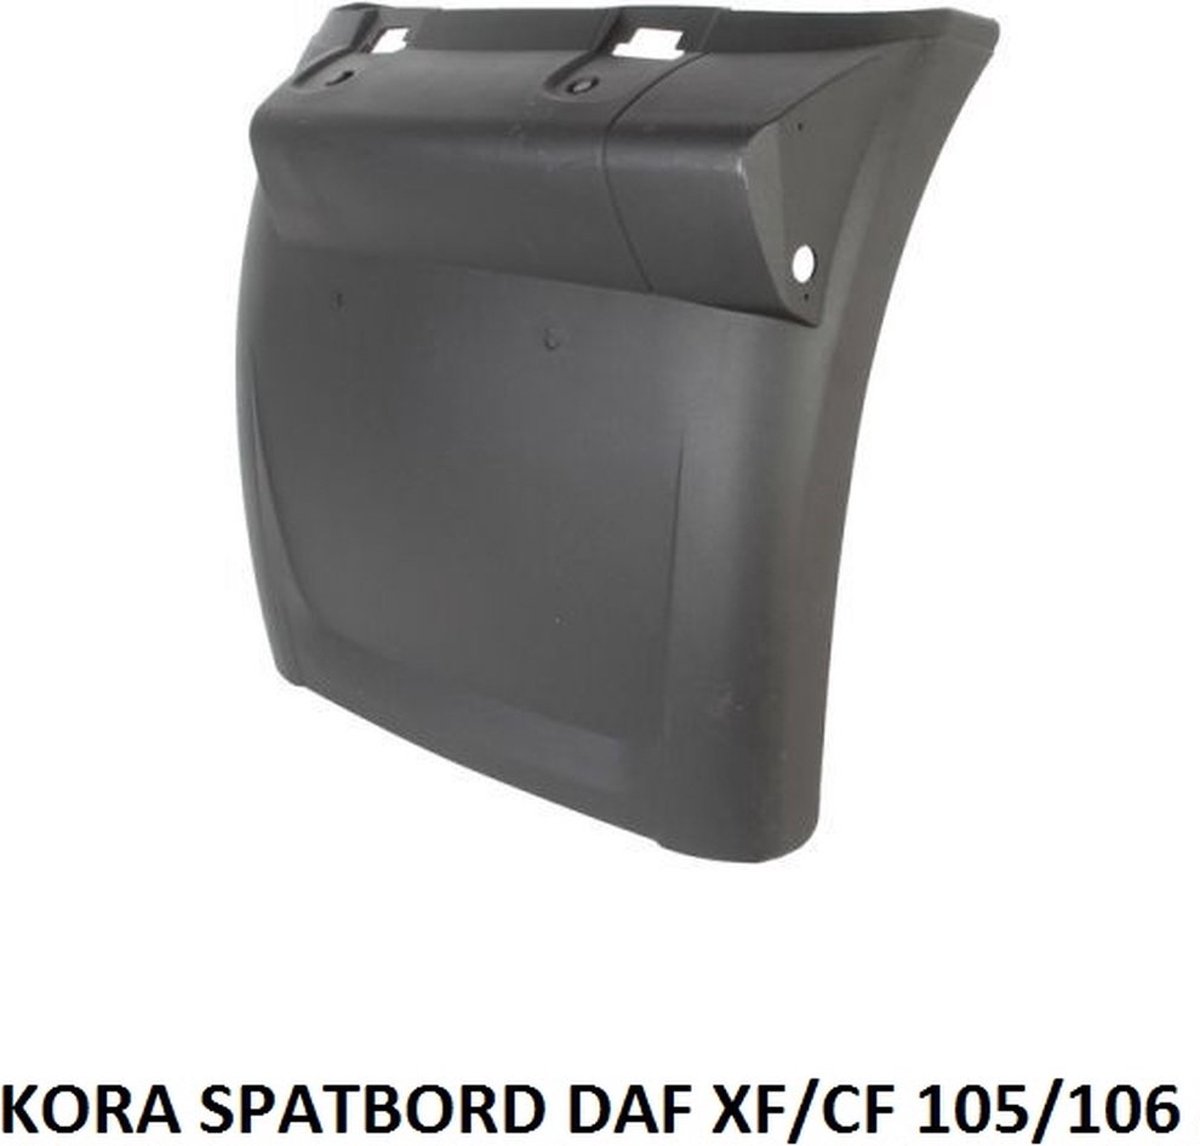 KORA - SPATBORD - DAF TRUCK XF/CF 105/106 - LINKS VOOR - OEM:1875549